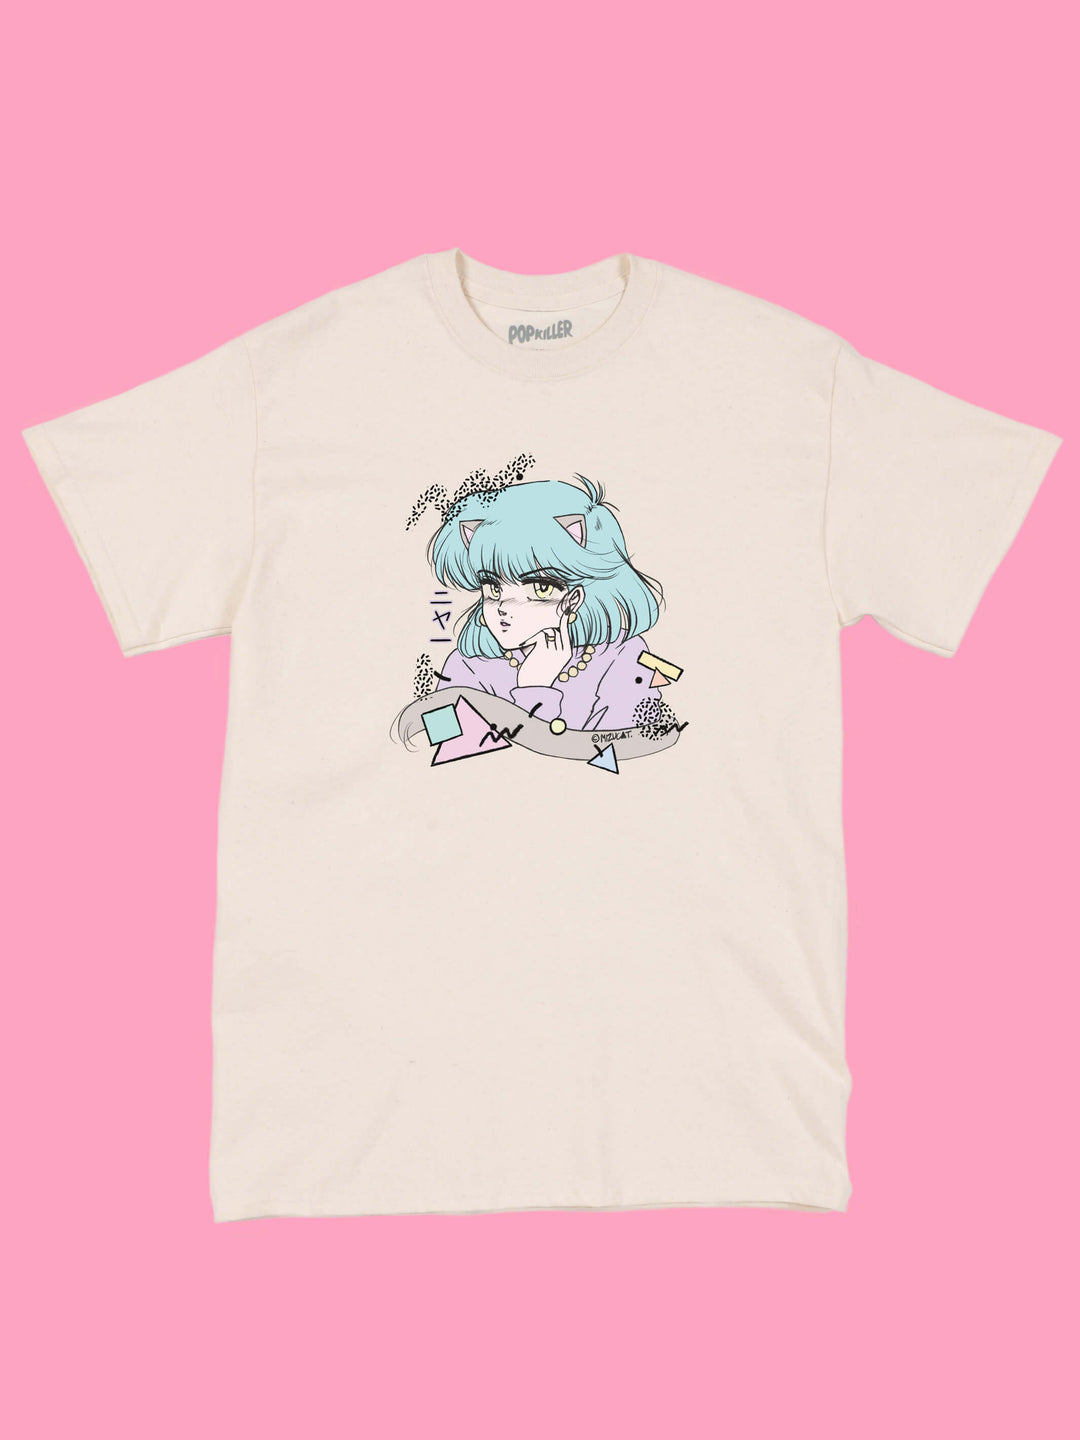 Anime catgirl vaporwave t-shirt.